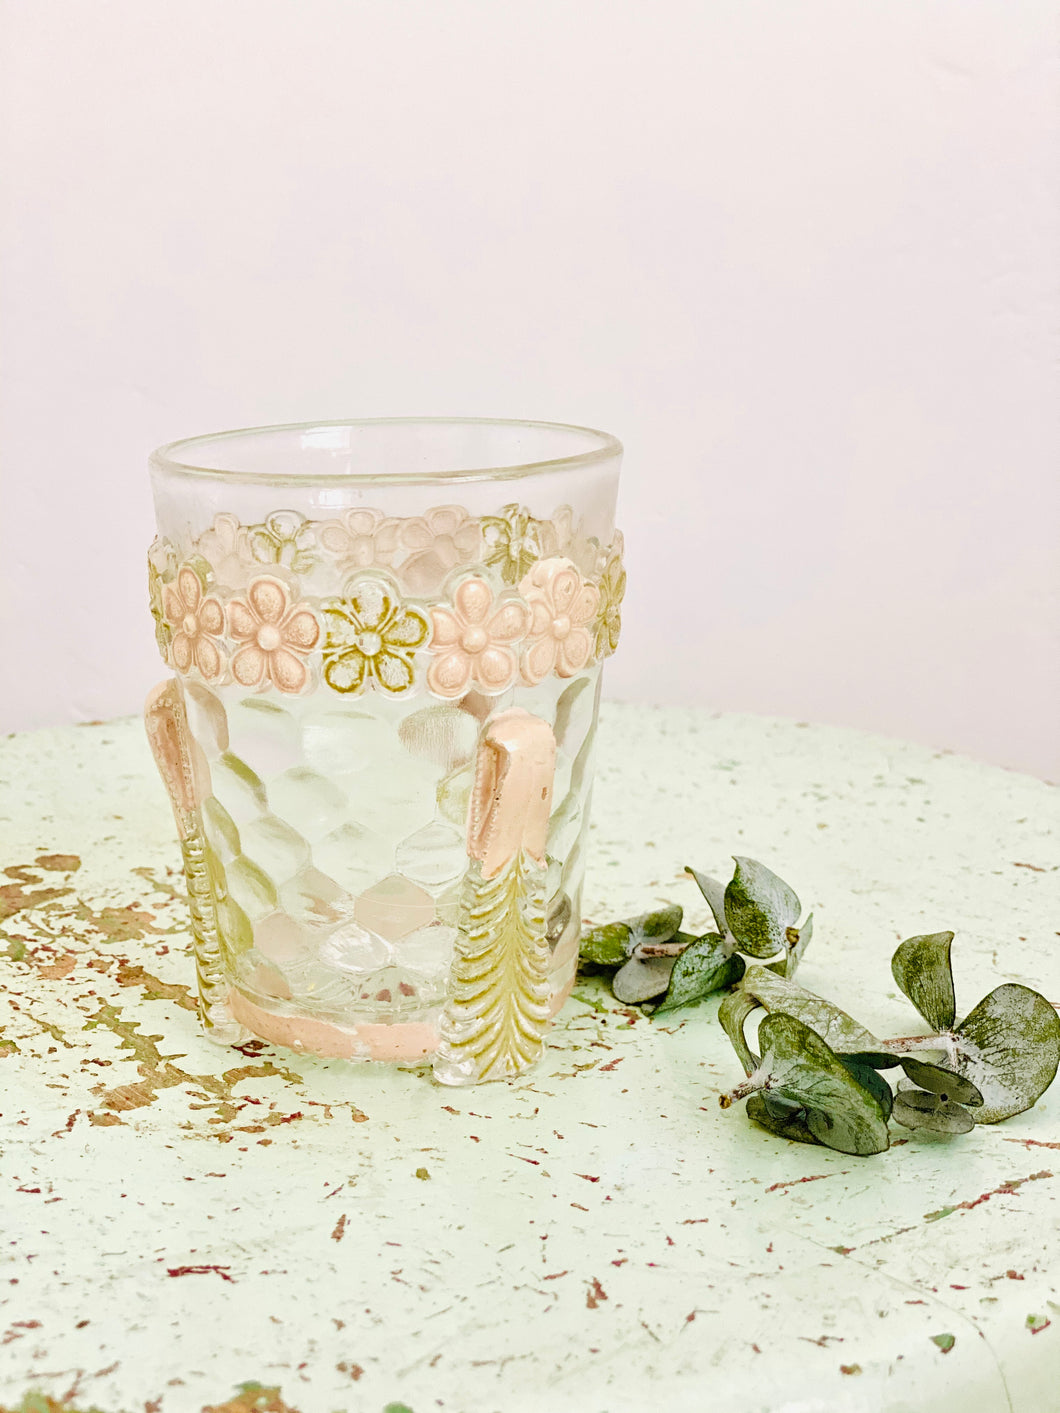 Antique 1900s glassware/ Art nouveau design/ Antique Tumbler/ Pastel Pink Flowers / Etched Glass